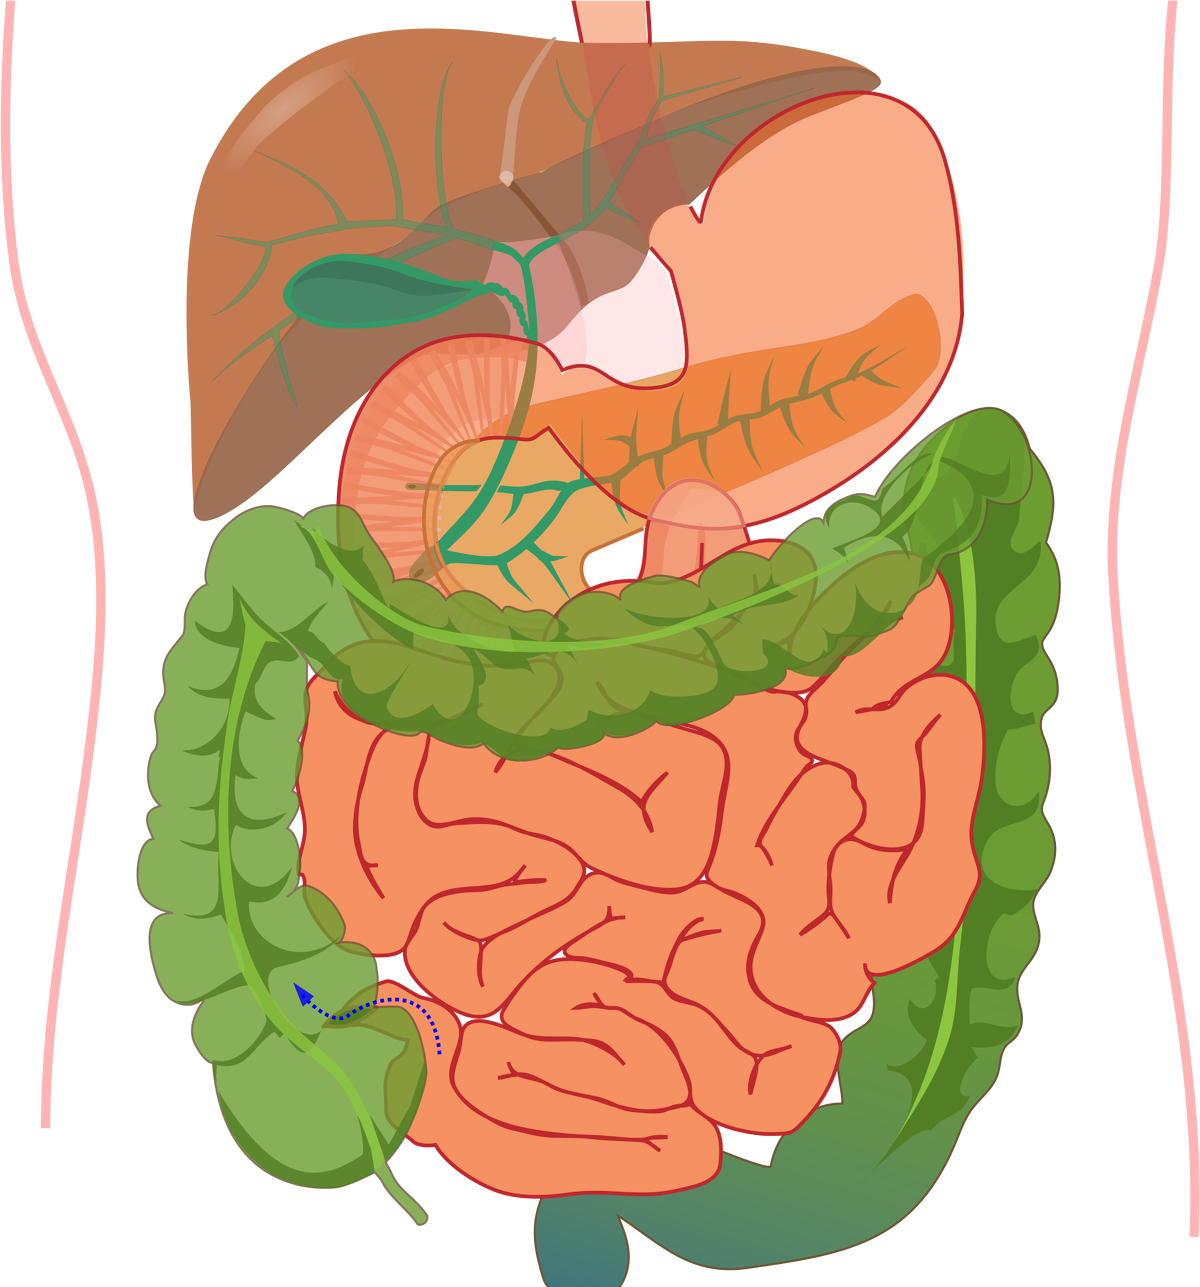 Органы желудок кишечник печень. Система желудочно кишечного тракта. Пищеварительная система ЖКТ человека. Пищеварительная система пищеварительный тракт. Схема желудочно-кишечного тракта.